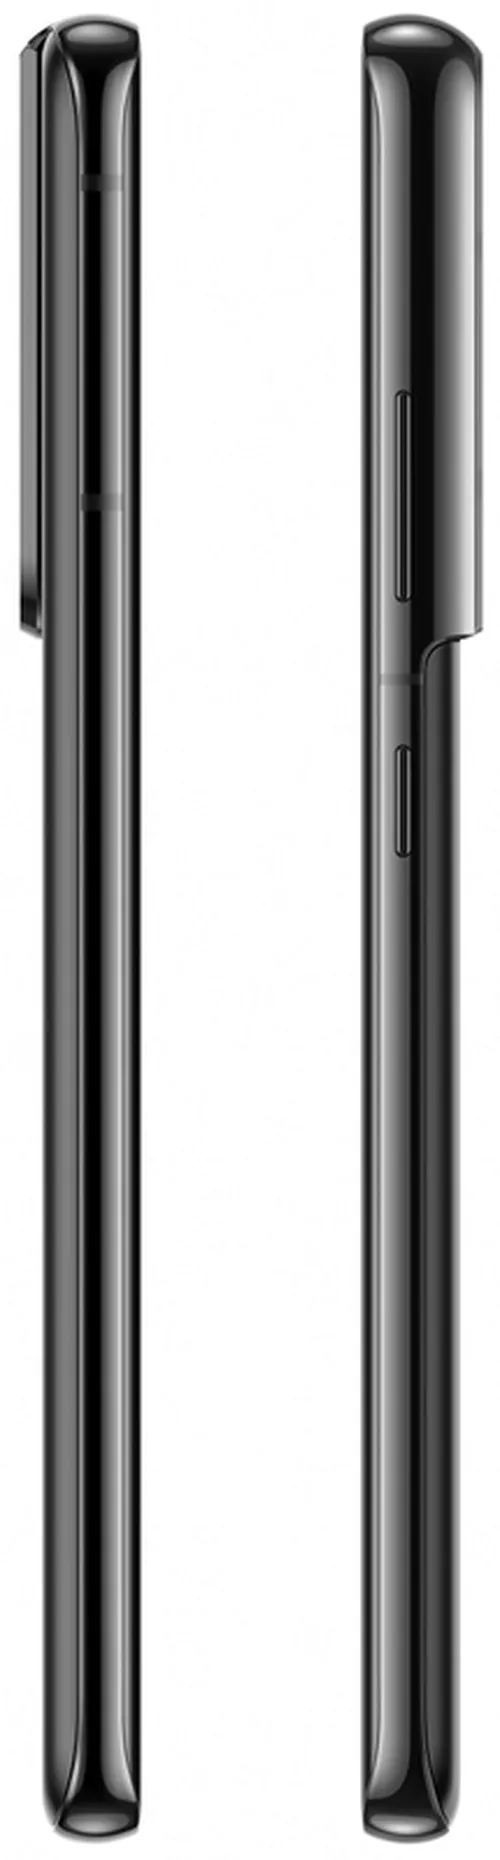 купить Смартфон Samsung G998B/256 Galaxy S21Ultra 5G Phantom Black в Кишинёве 